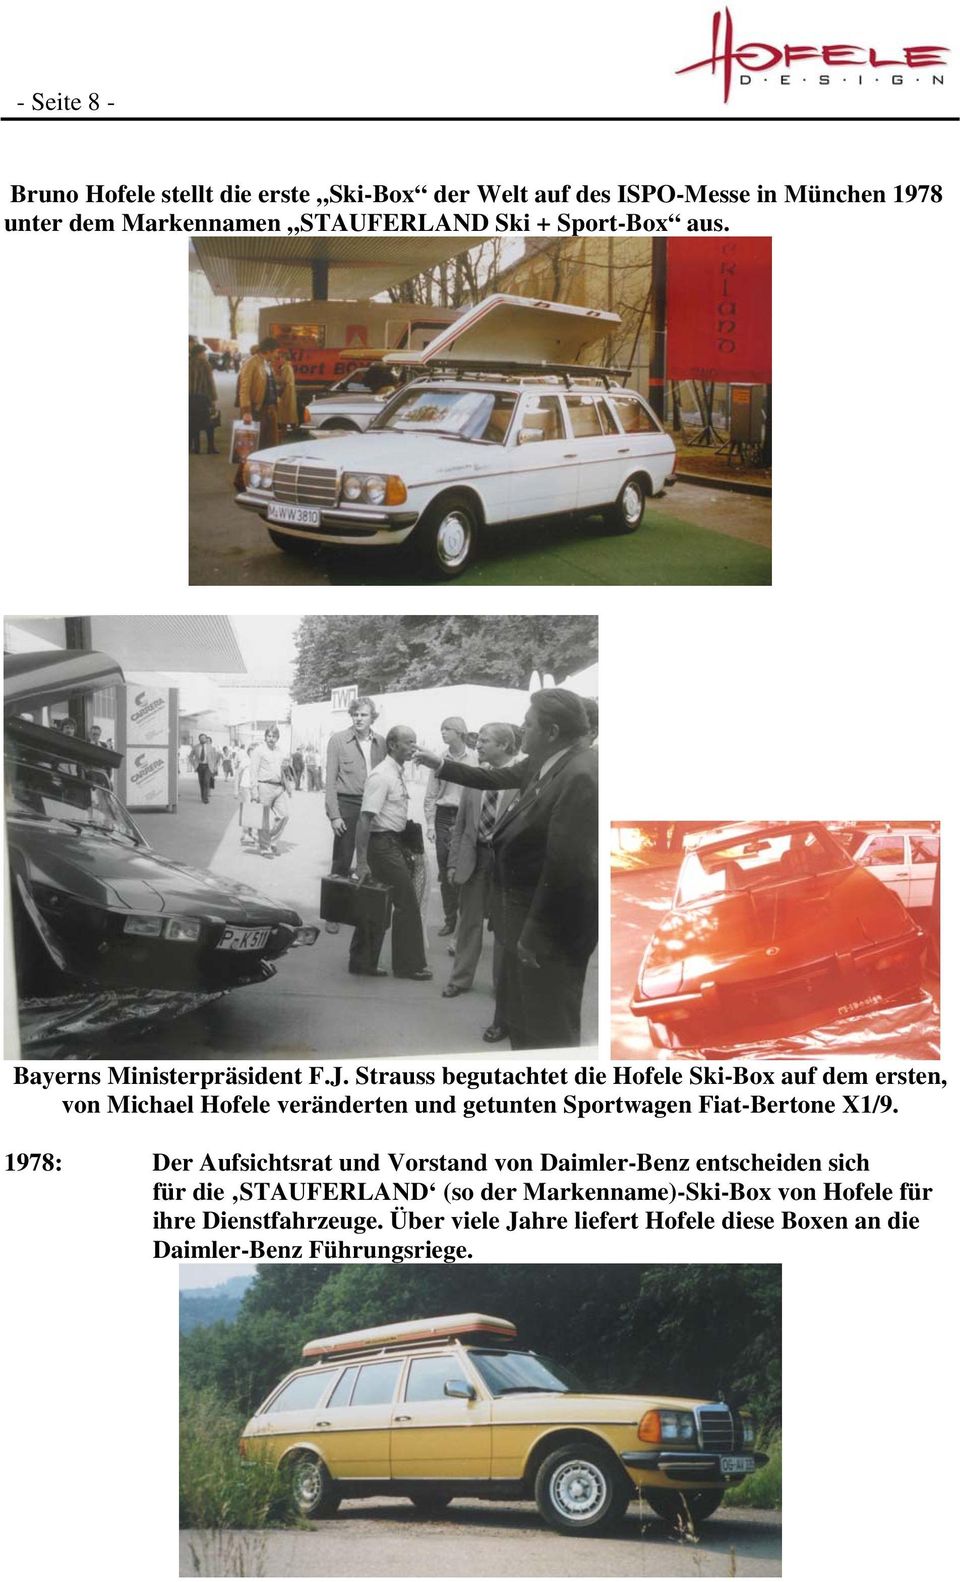 Strauss begutachtet die Hofele Ski-Box auf dem ersten, von Michael Hofele veränderten und getunten Sportwagen Fiat-Bertone X1/9.